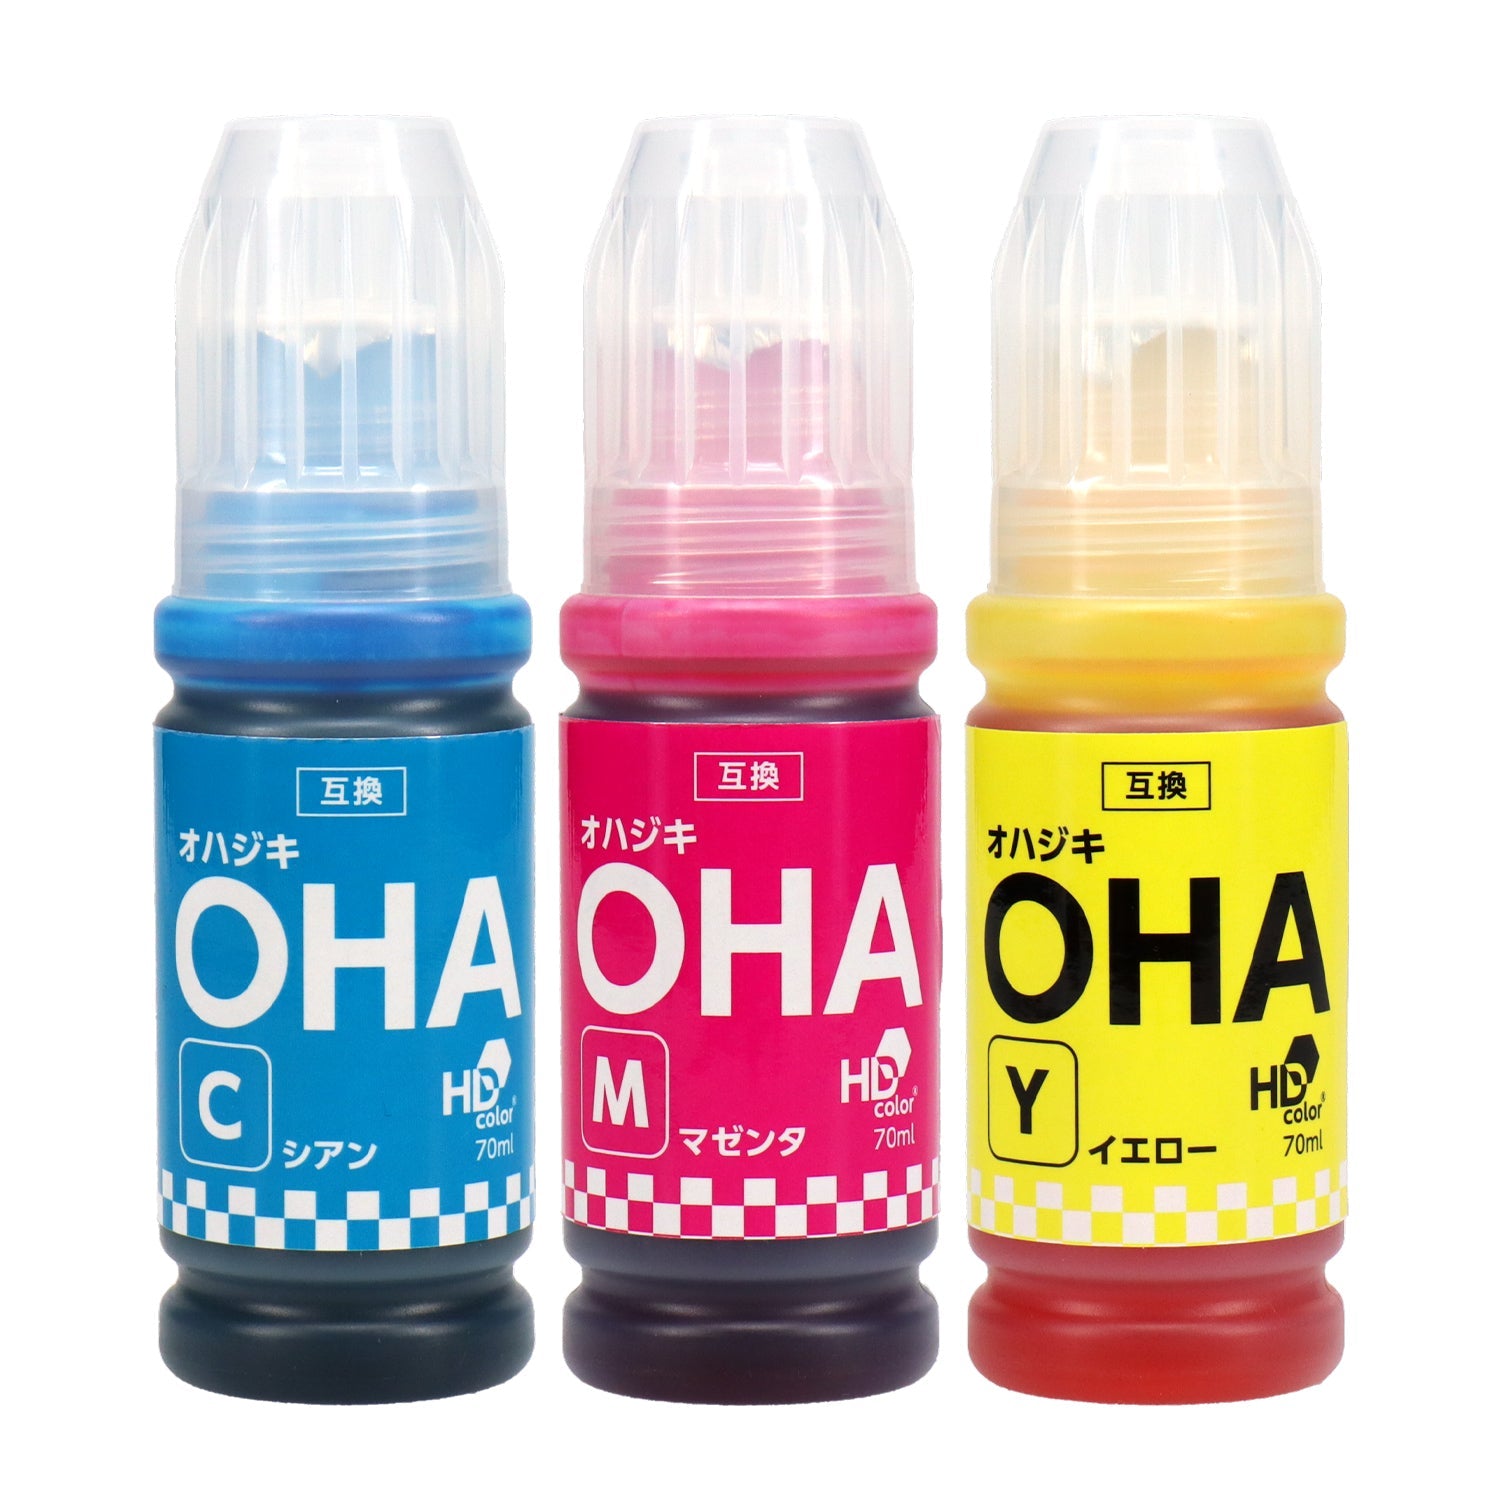 エプソン用 OHA (オハジキ) 互換インクボトル カラー3色